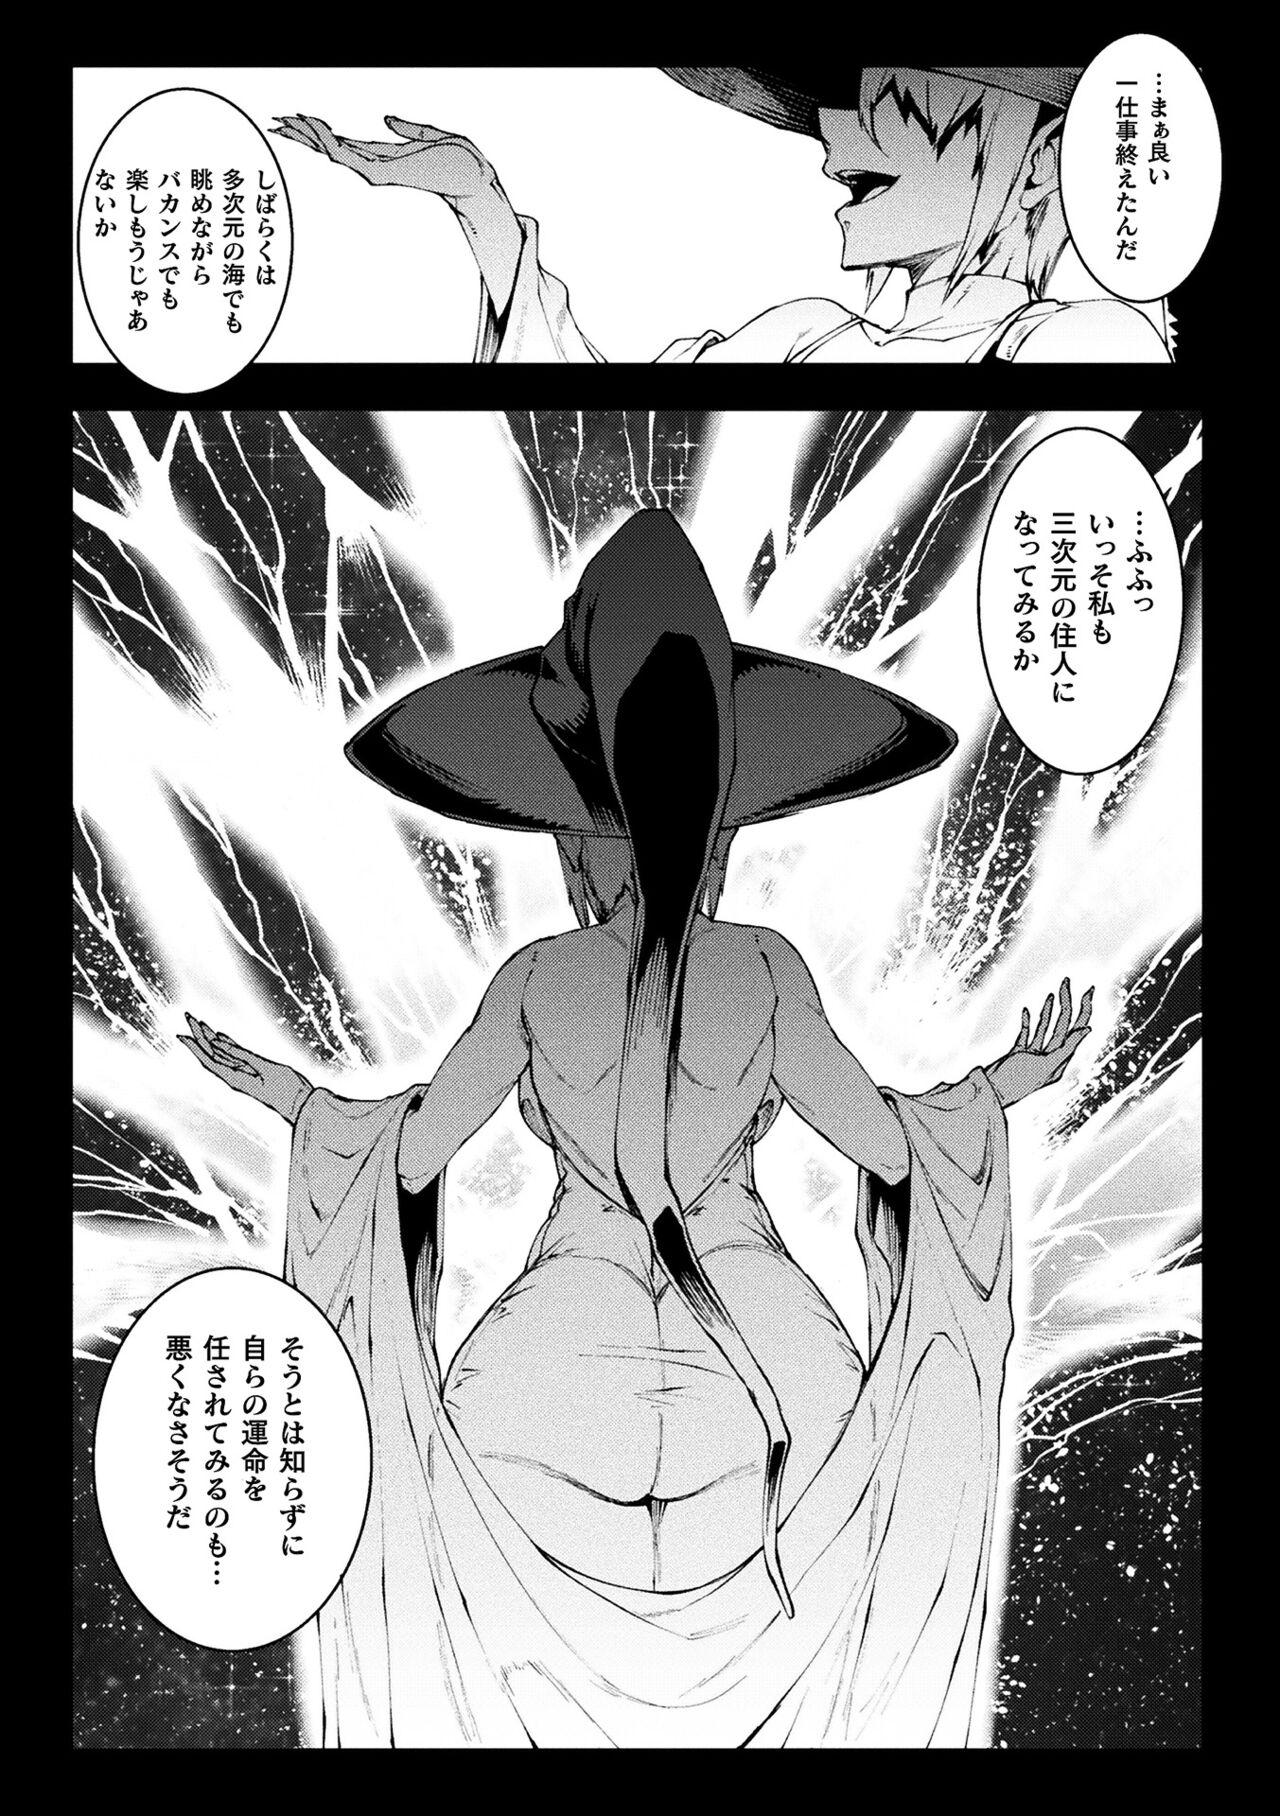 [Erect Sawaru] Raikou Shinki Igis Magia III -PANDRA saga 3rd ignition- 4 [Digital] 278